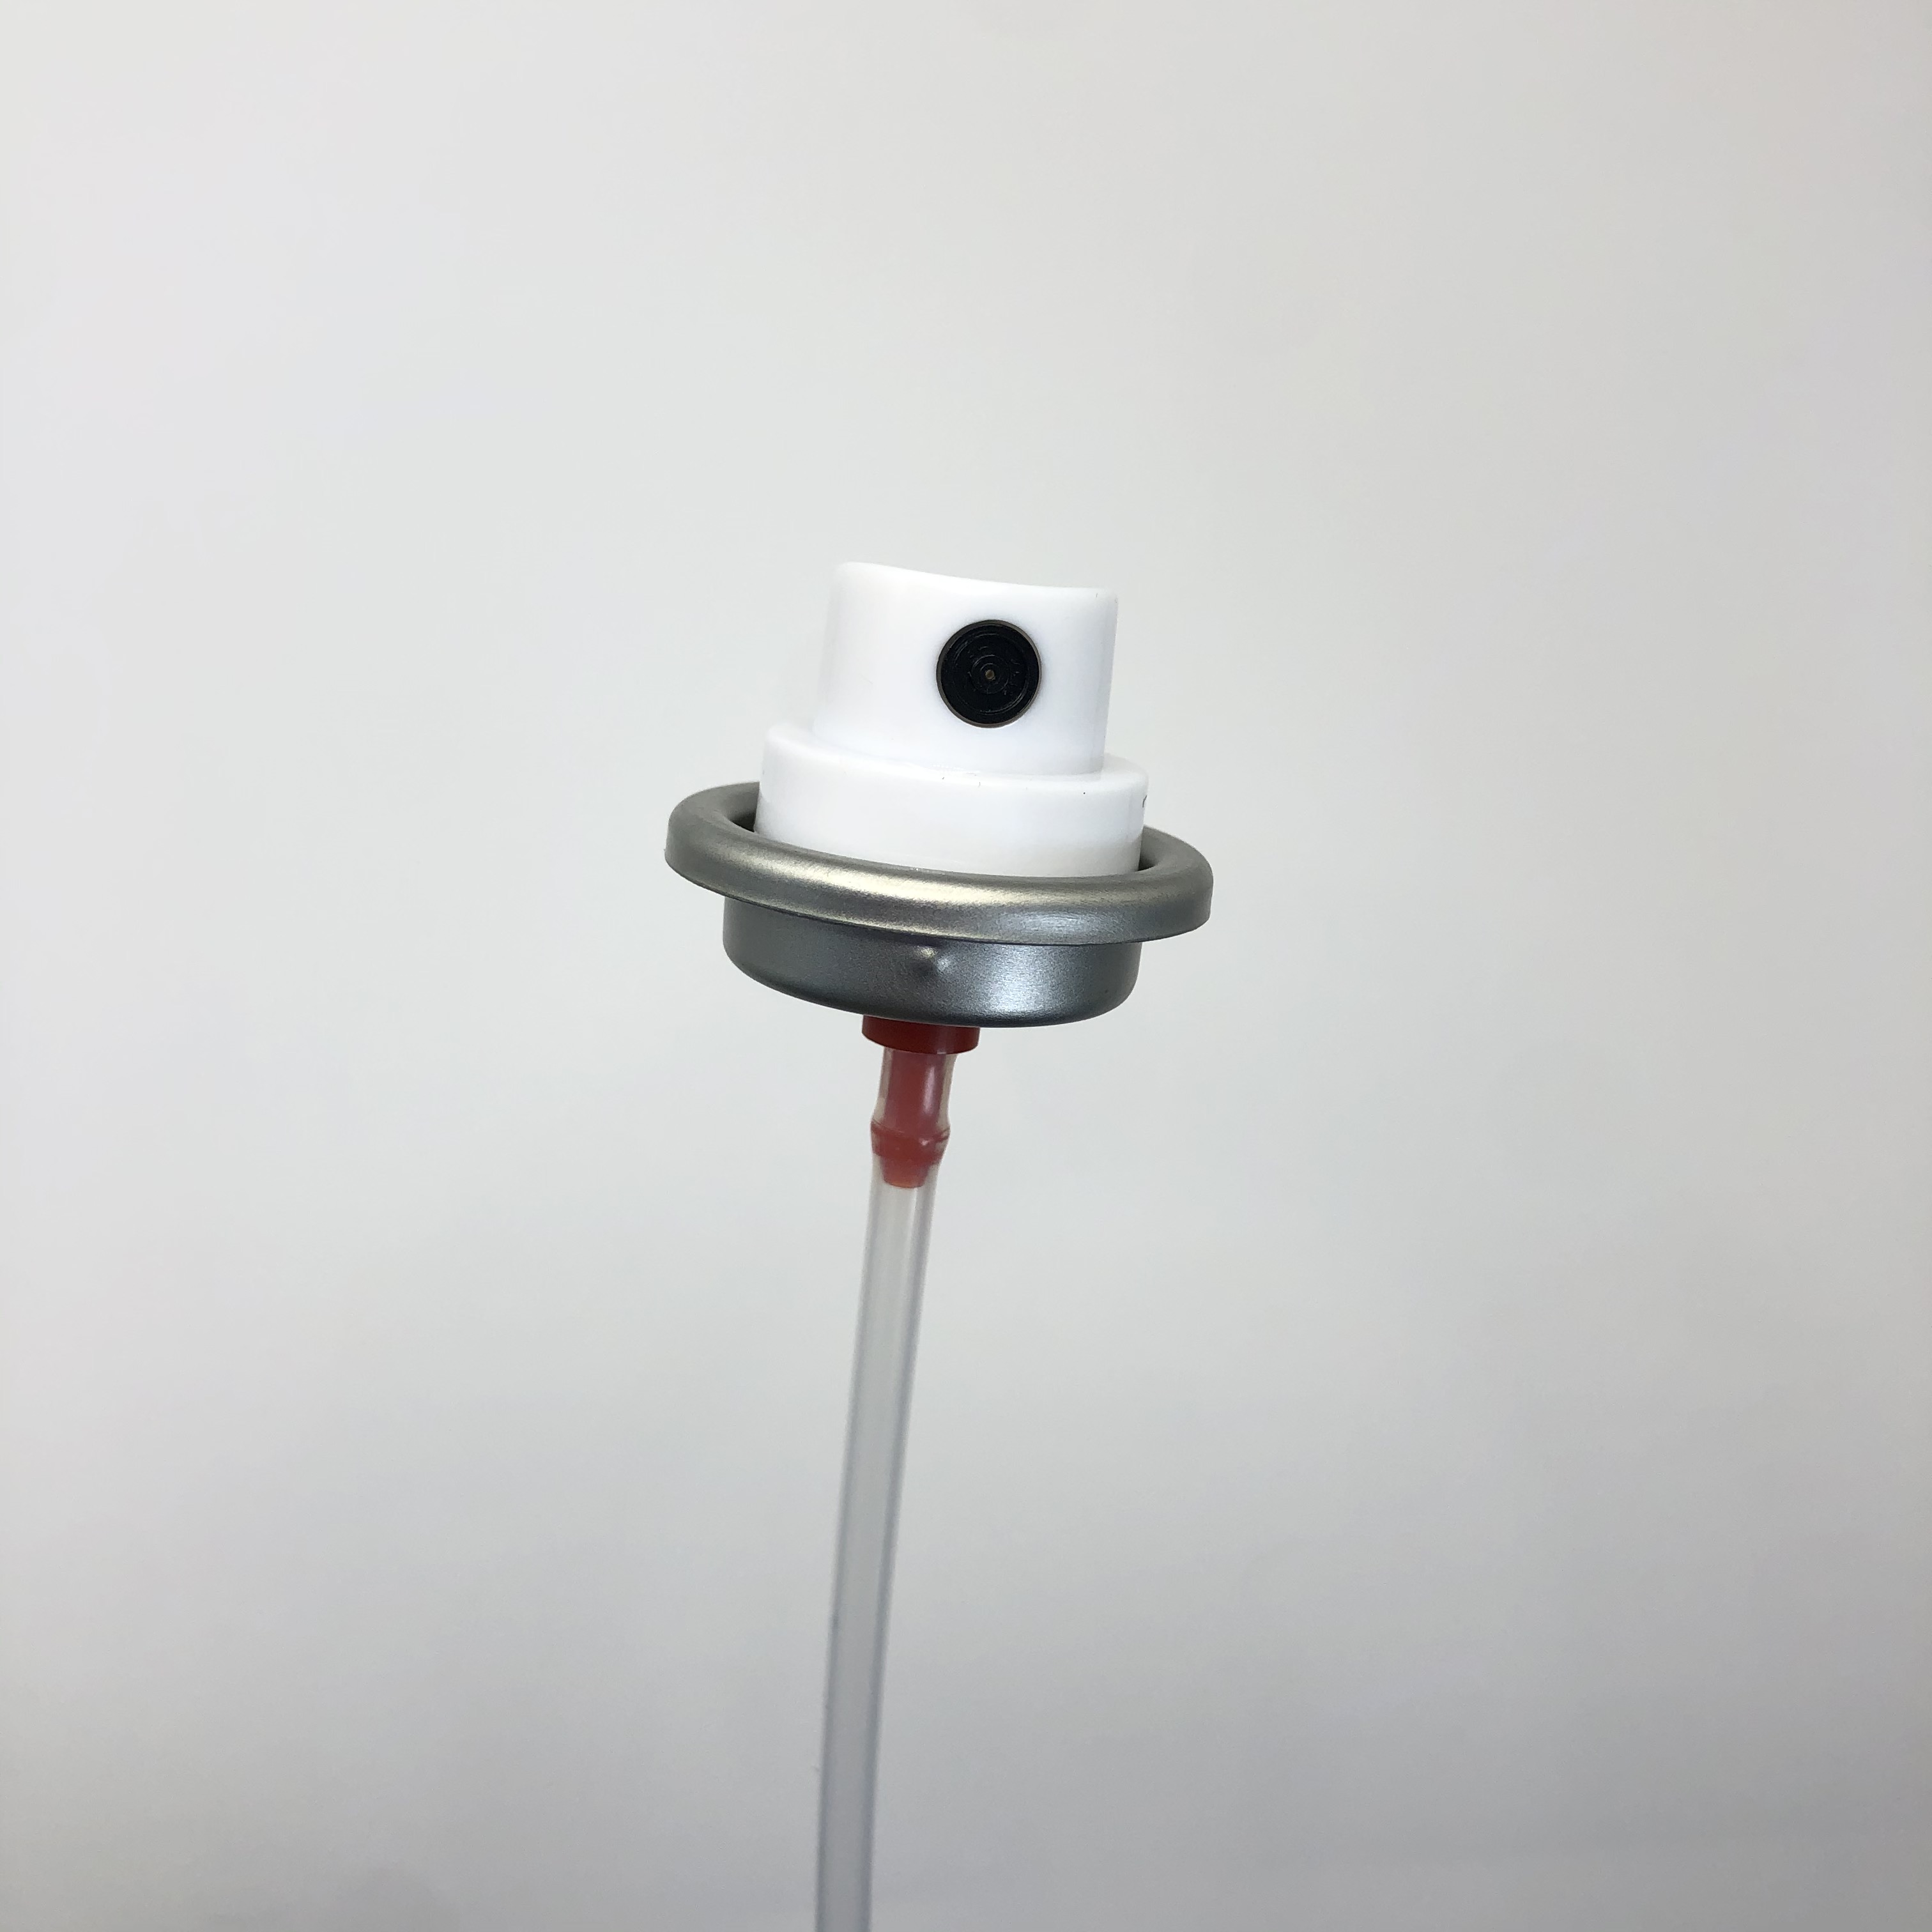 Nastavitelný ventil pro aerosolovou barvu – všestranný ventil pro přizpůsobitelné nanášení barvy při kutilských projektech a uměleckých snahách